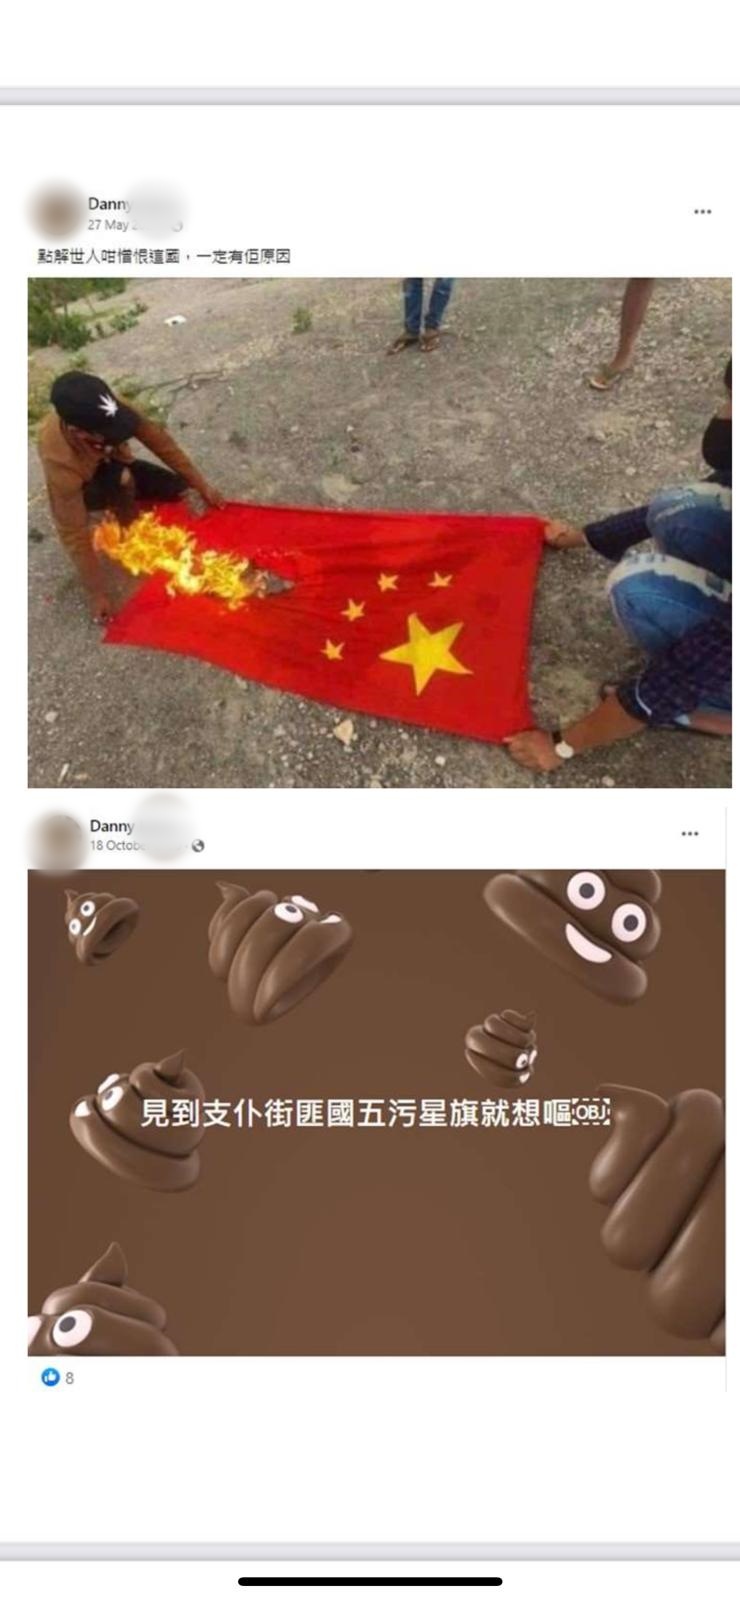 被捕人在社交平台發帖文，帖文內容包括焚燒中國國旗相片